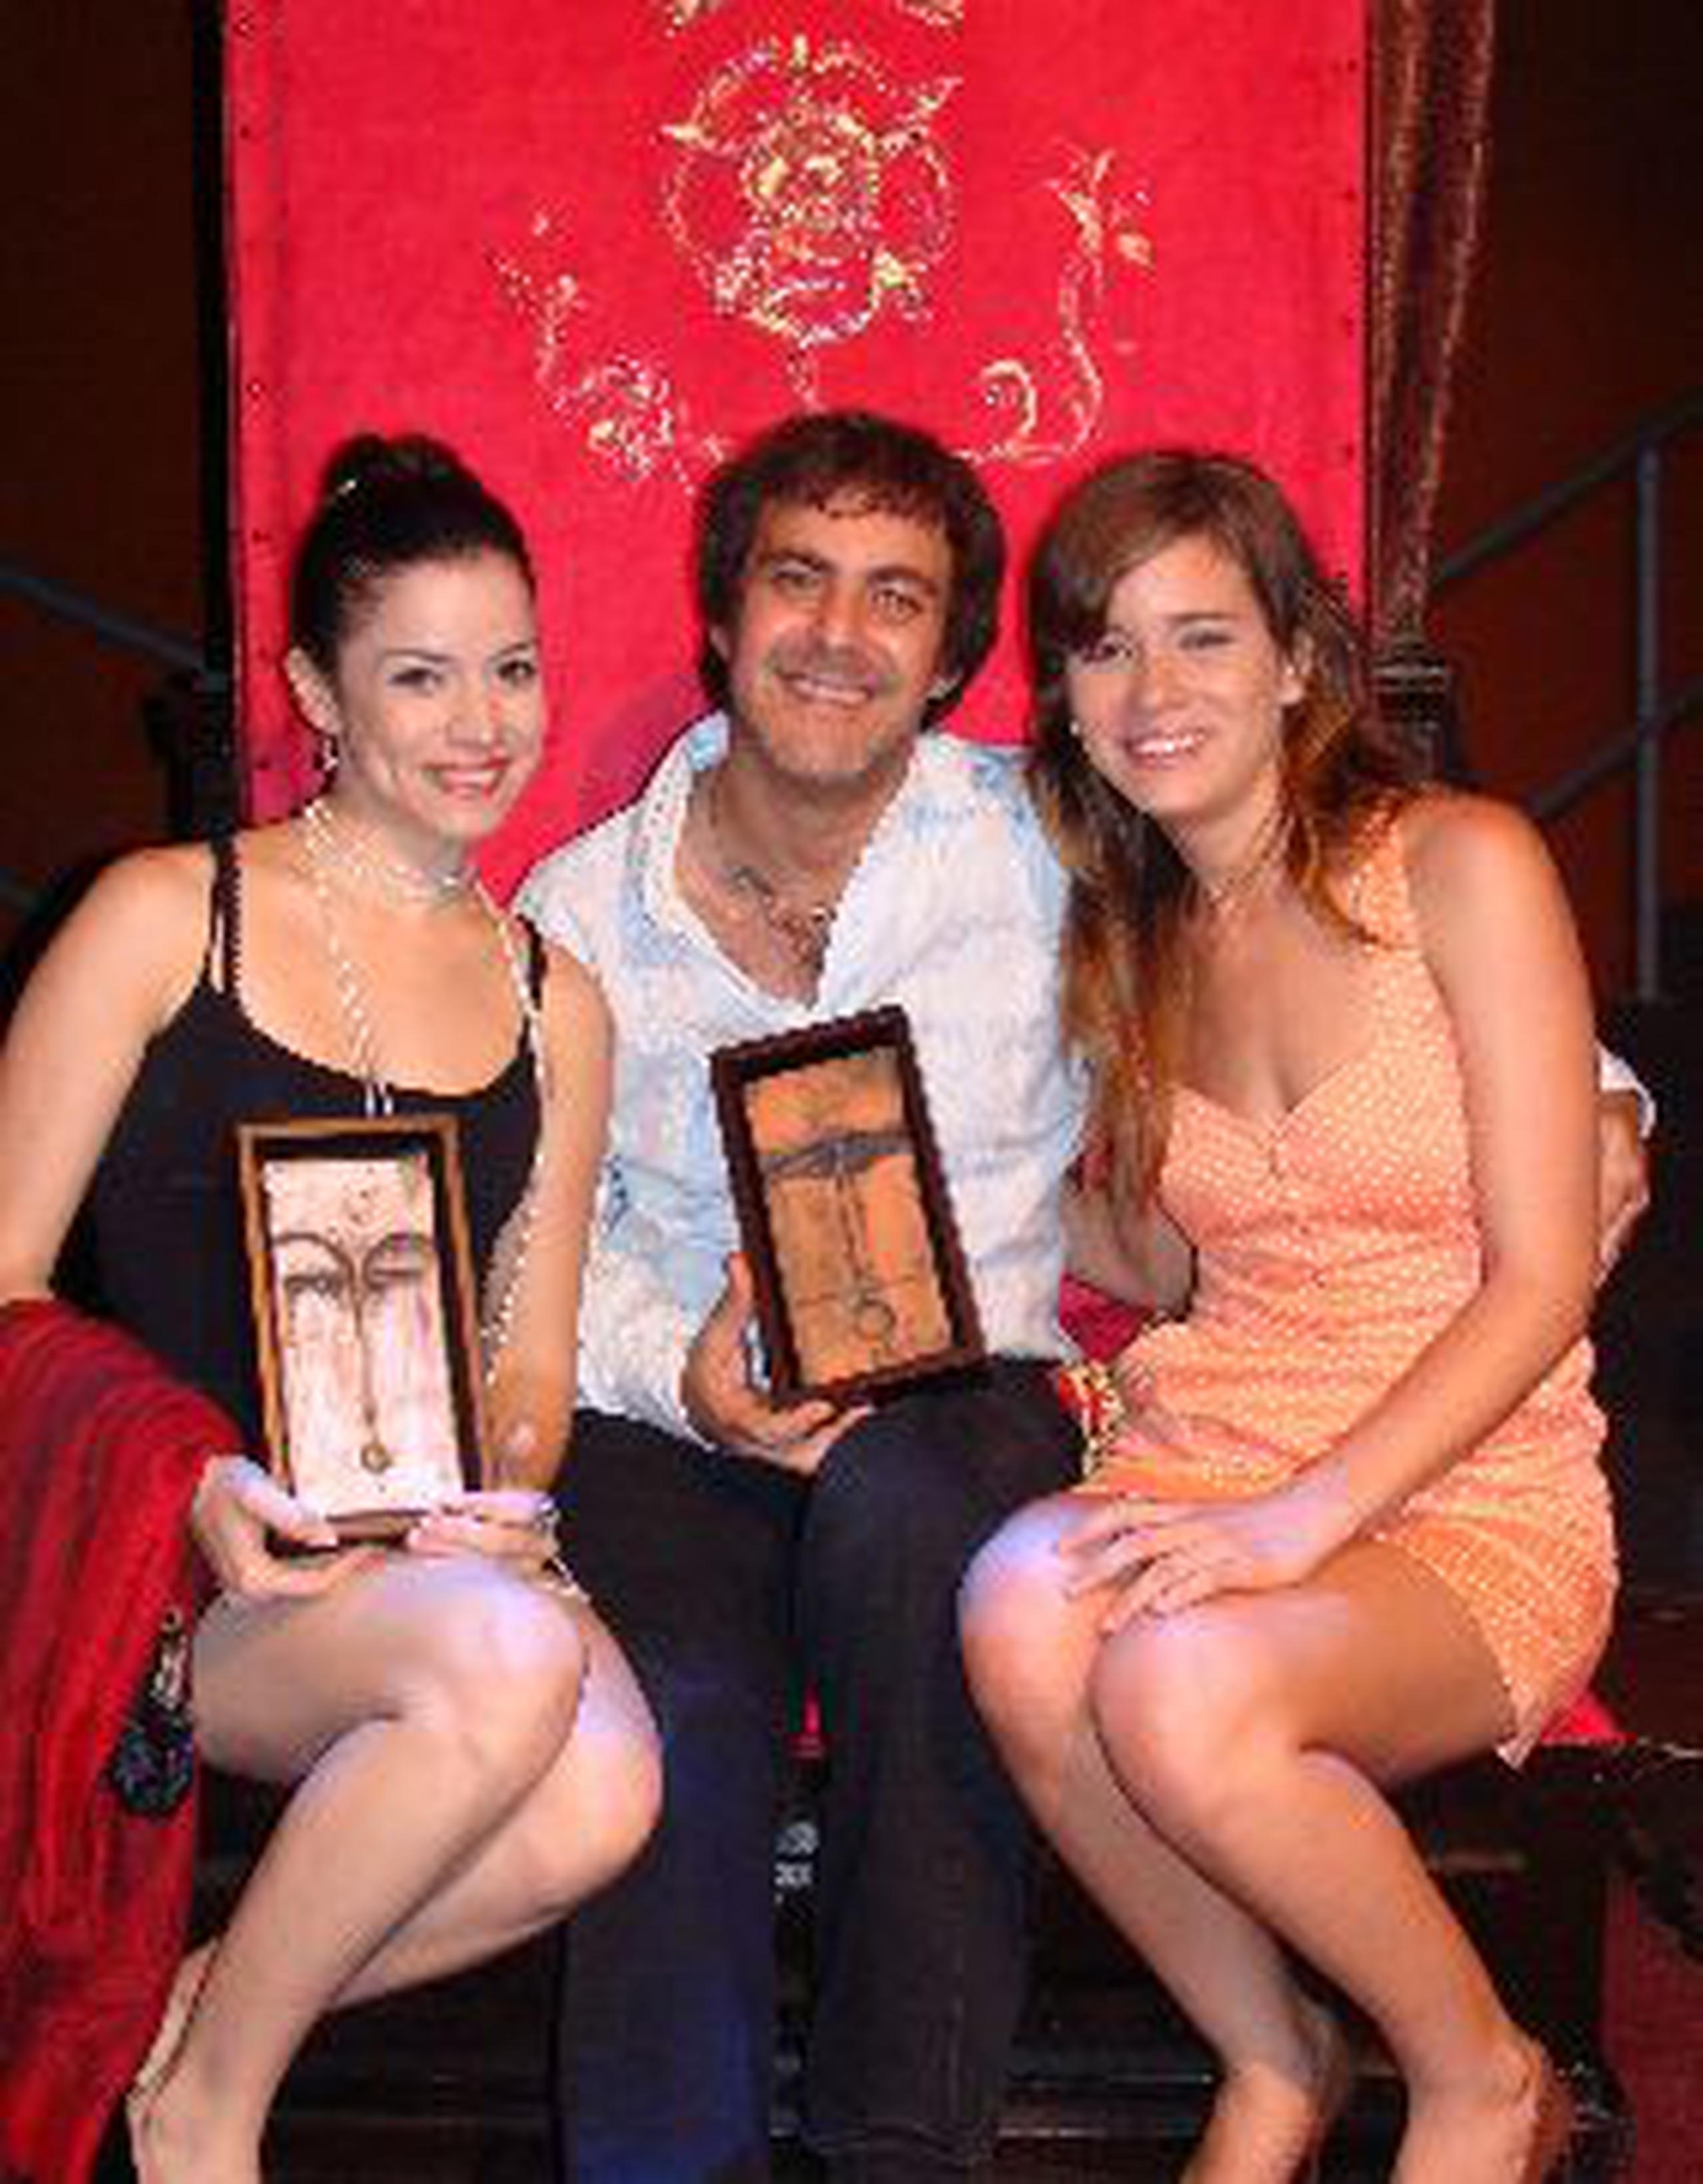 La actriz Jazmín Caratini y el director Gilberto Valenzuela recibieron los premios en el Festival de Teatro del Tercer Amor. Camila Monclova forma parte de la producción.  <font color="yellow">(Suministrada)</font>